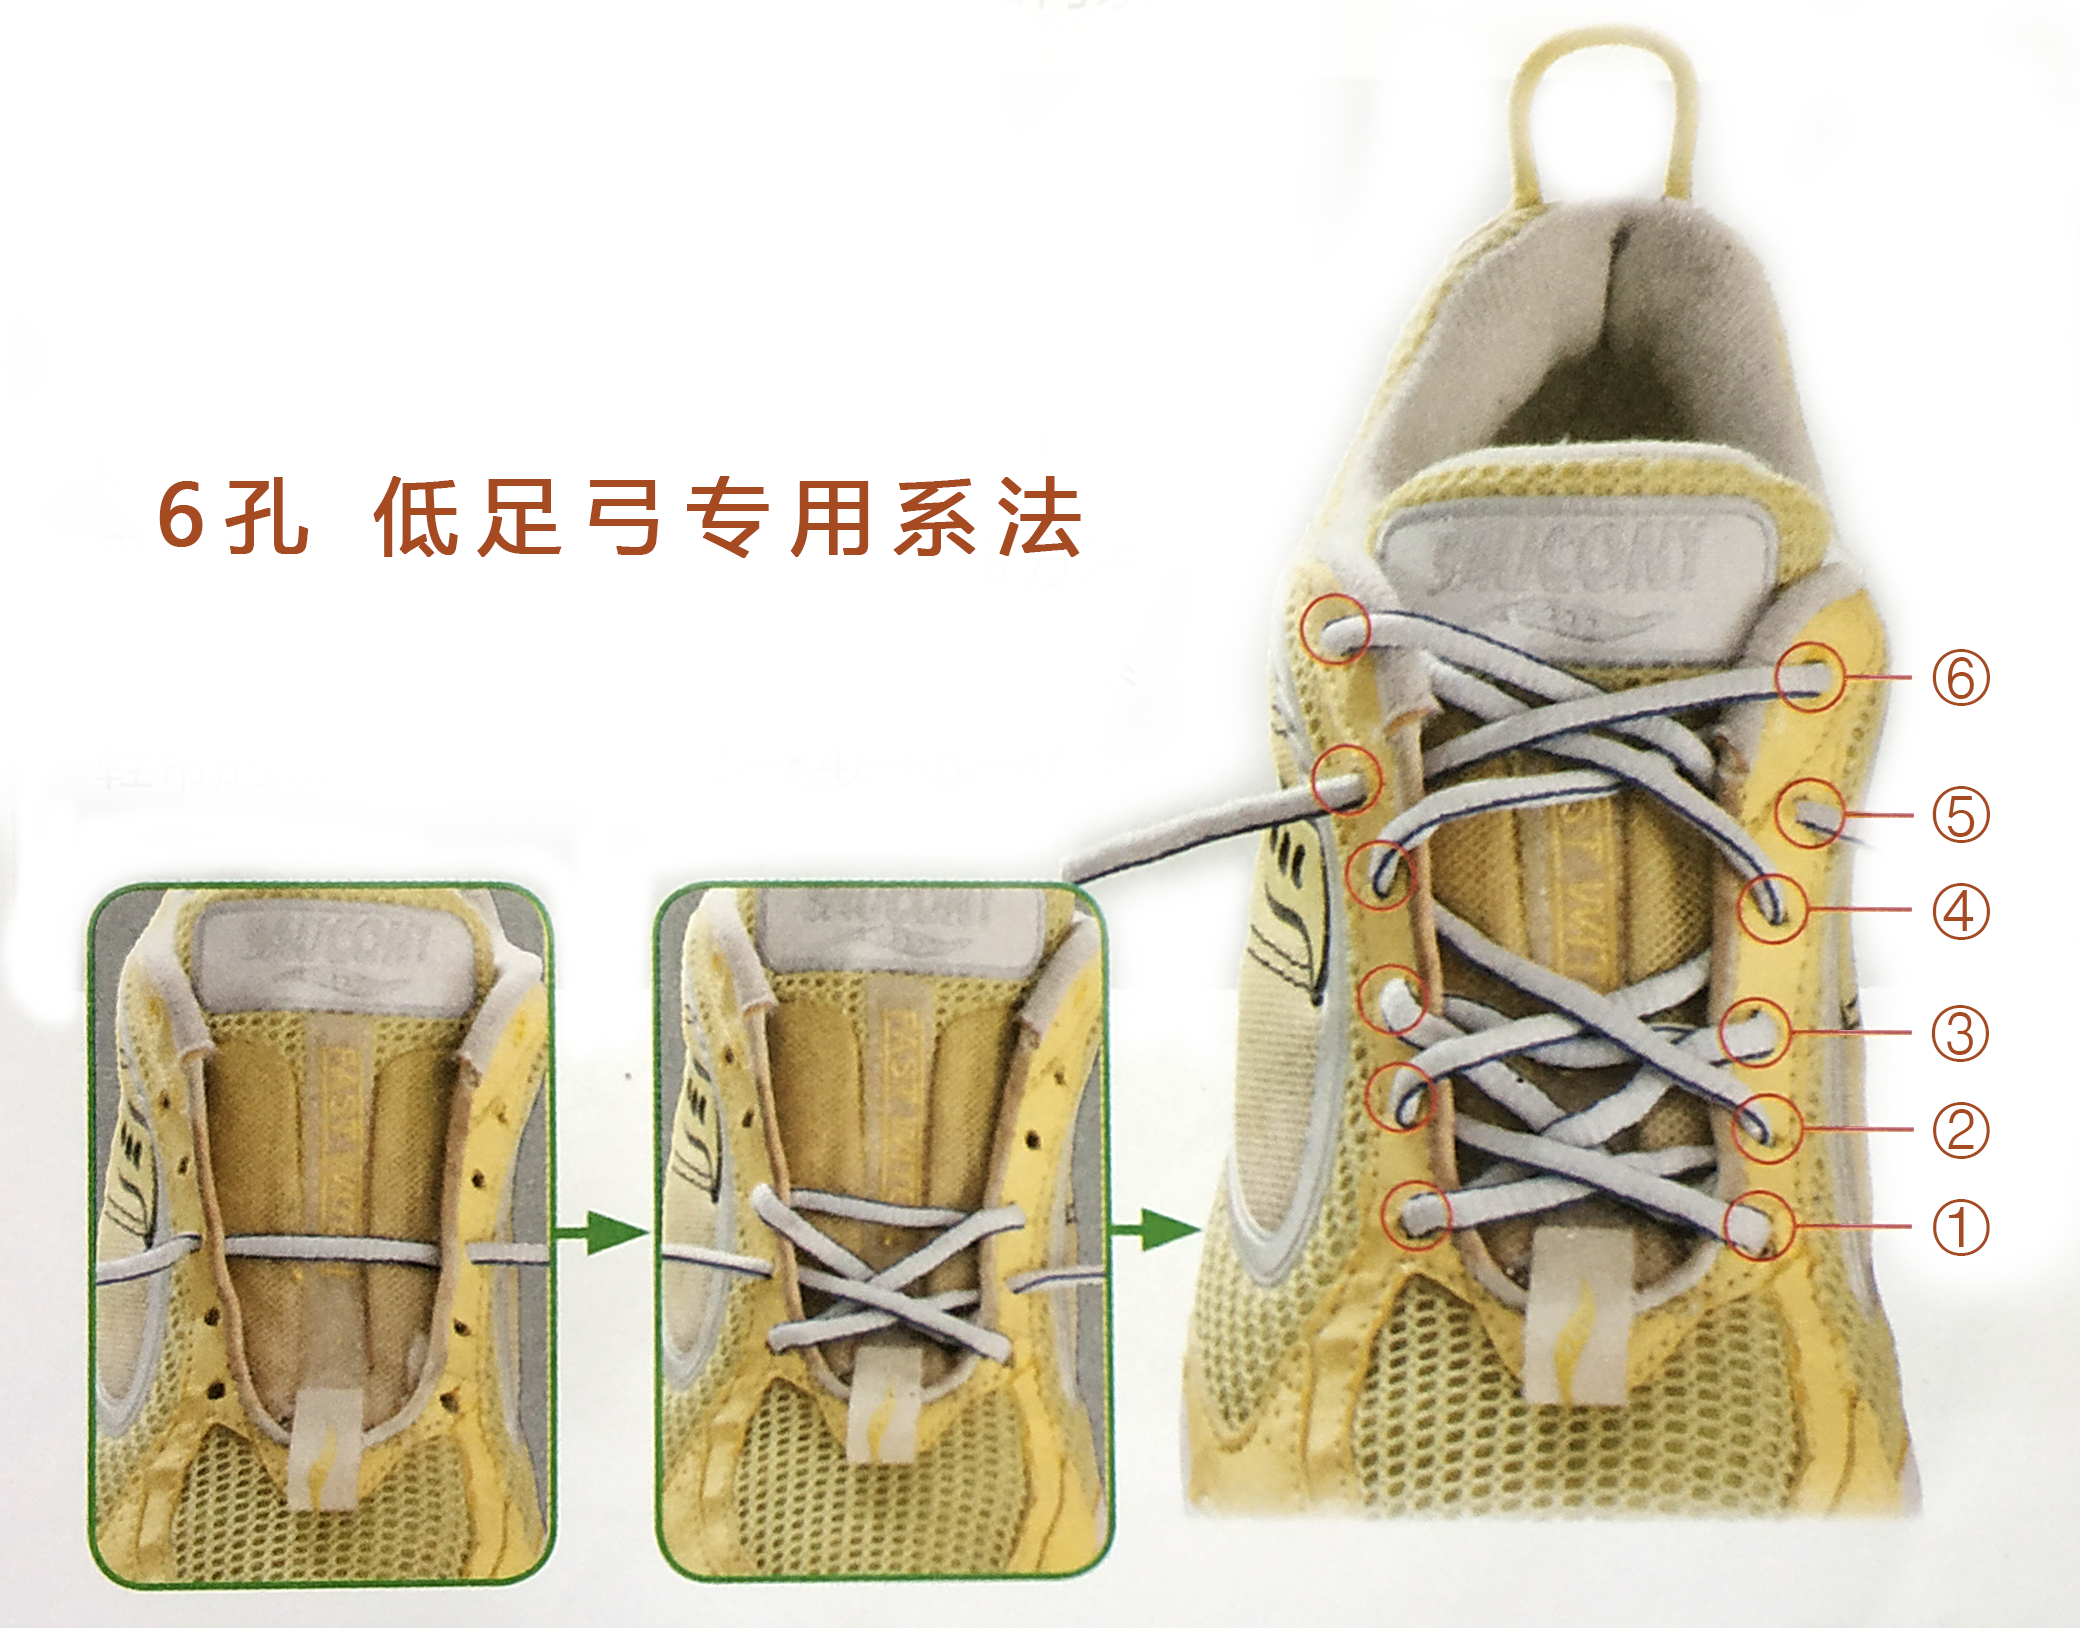 三孔鞋带的24种系法图片